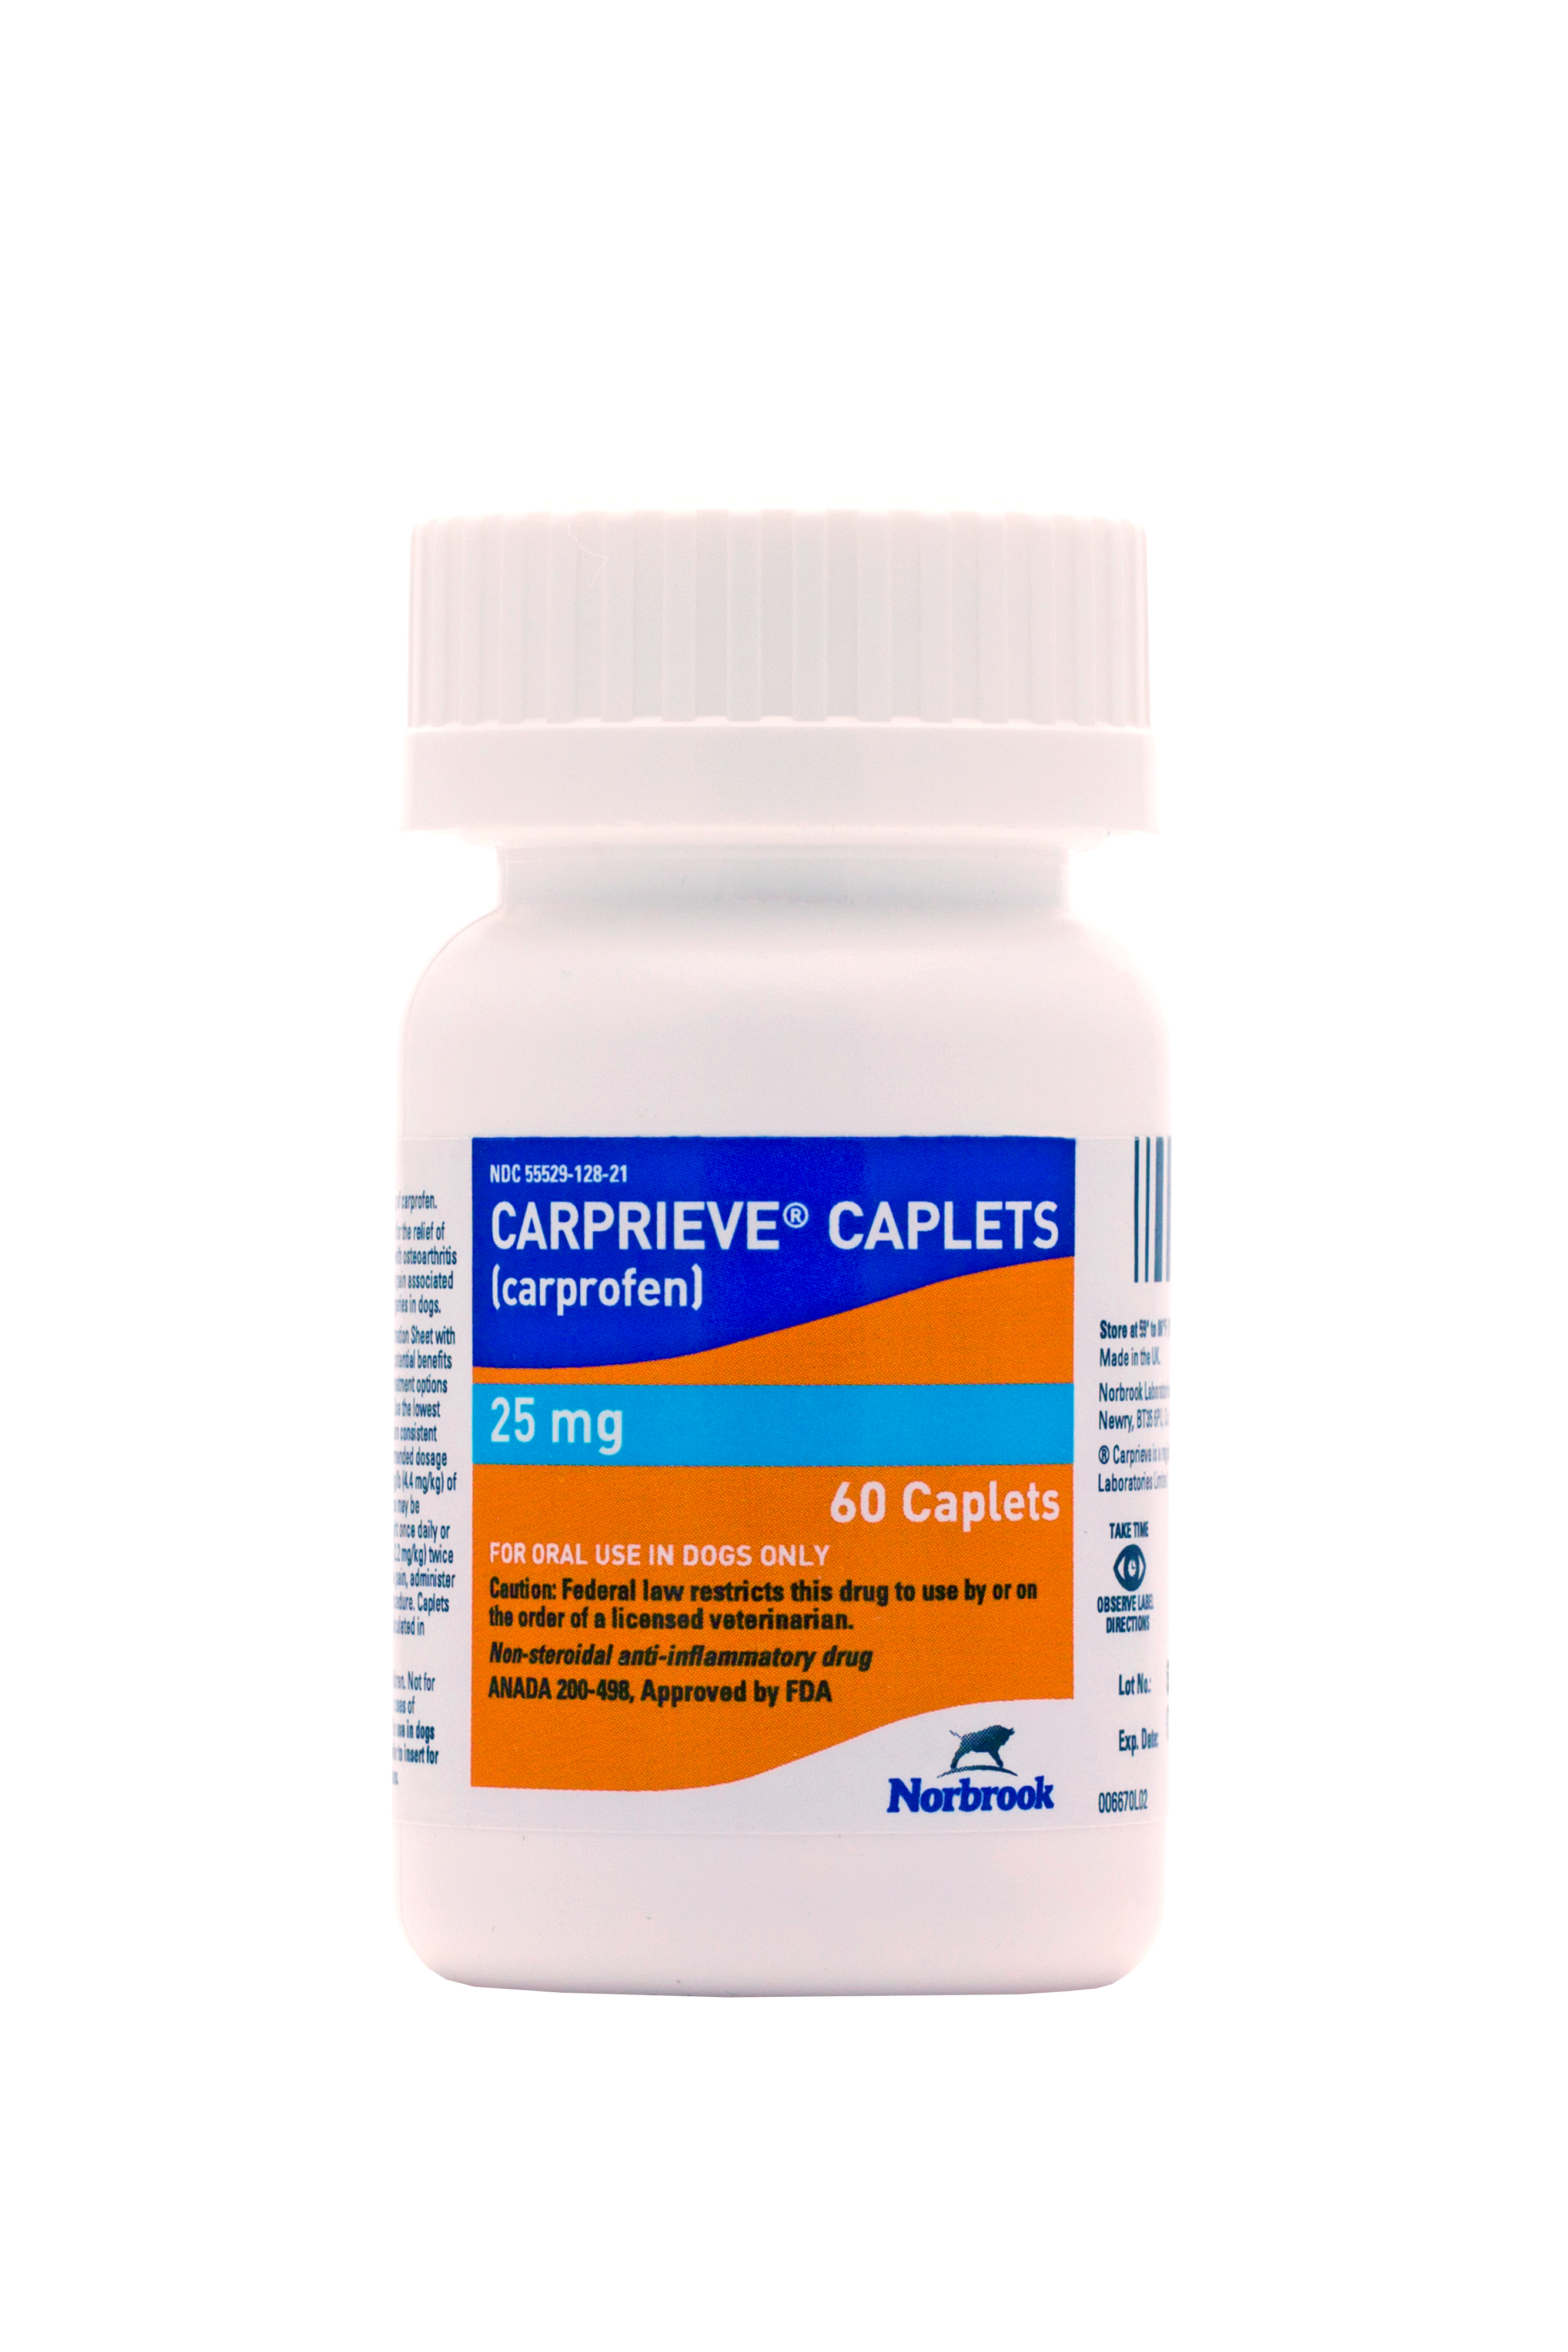 CARPRIEVE 25MG x 60 Caplets  [carprofen] EXP 2/25